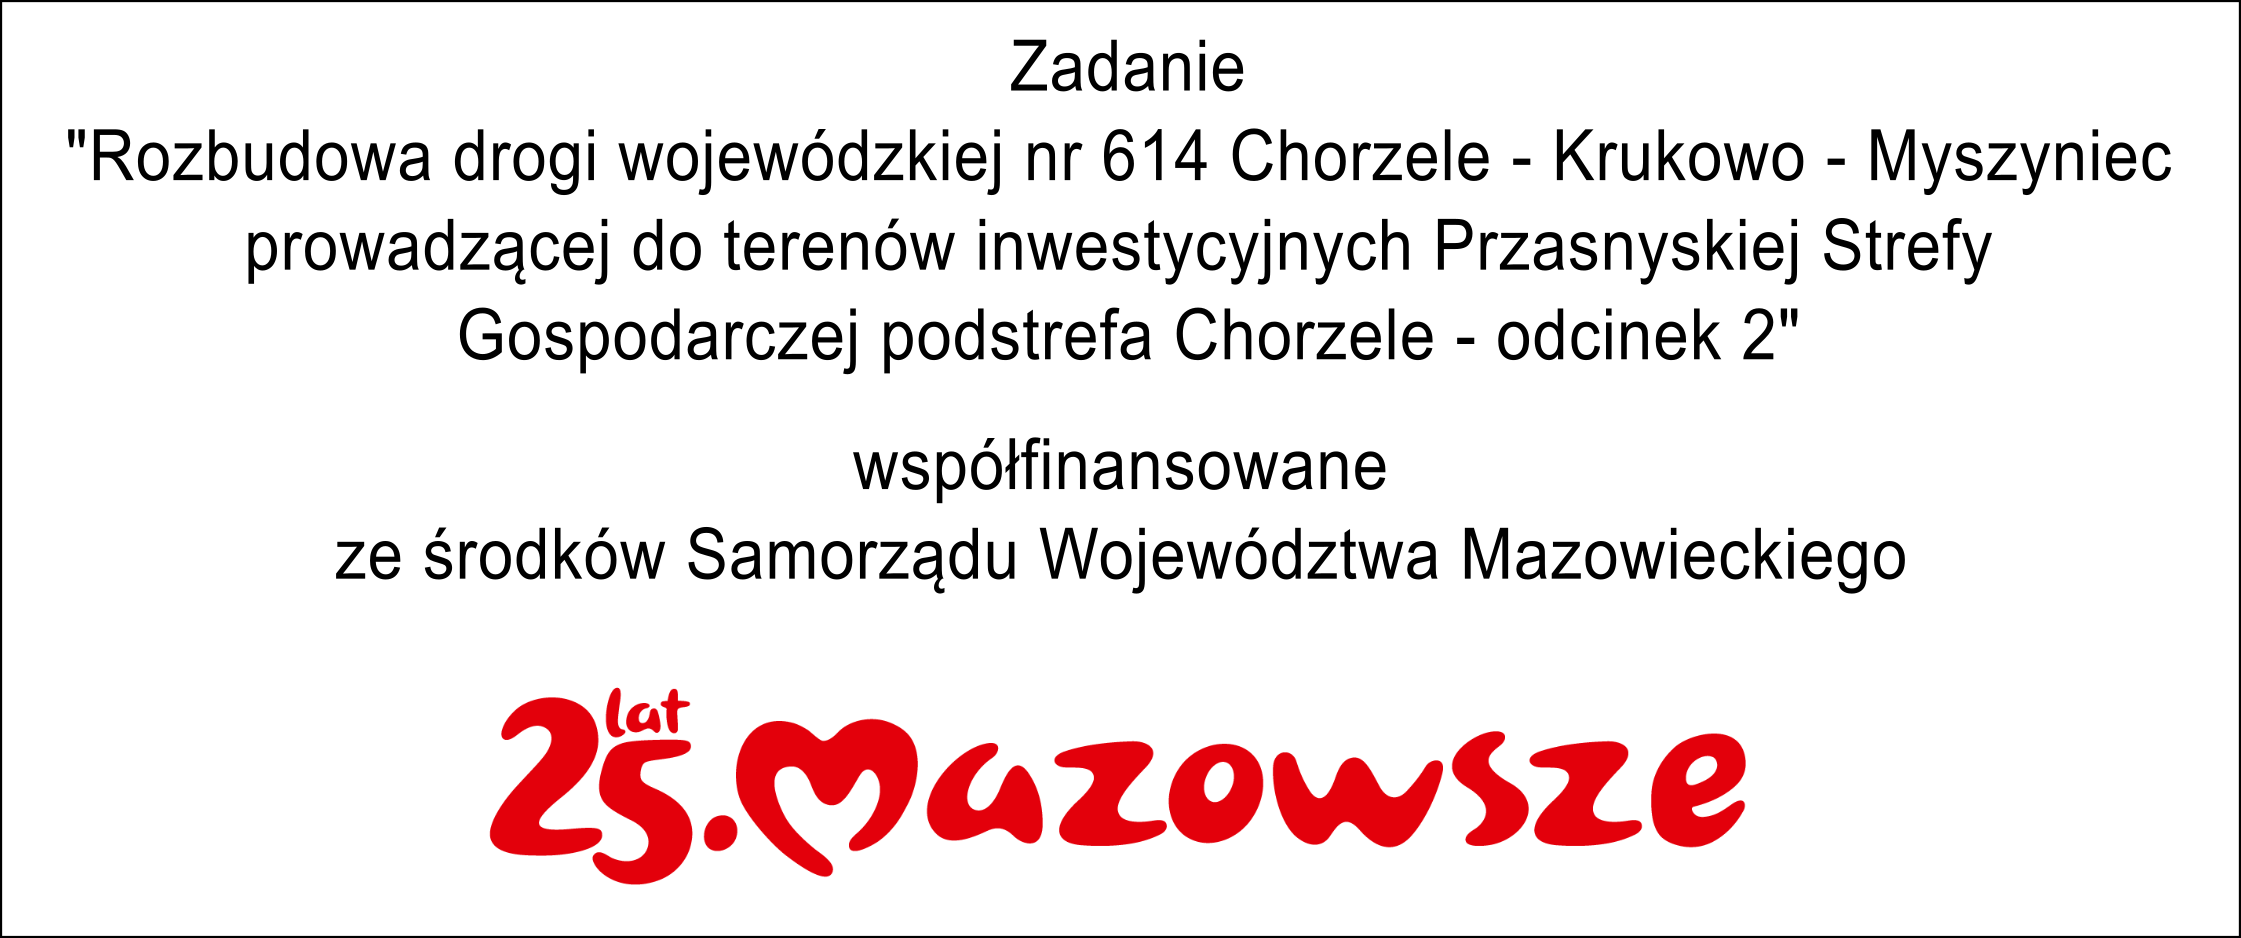 Informacja o współfinansowaniu zadania budowy odcinka drogi ze środków Samorządu Województwa Mazowieckiego